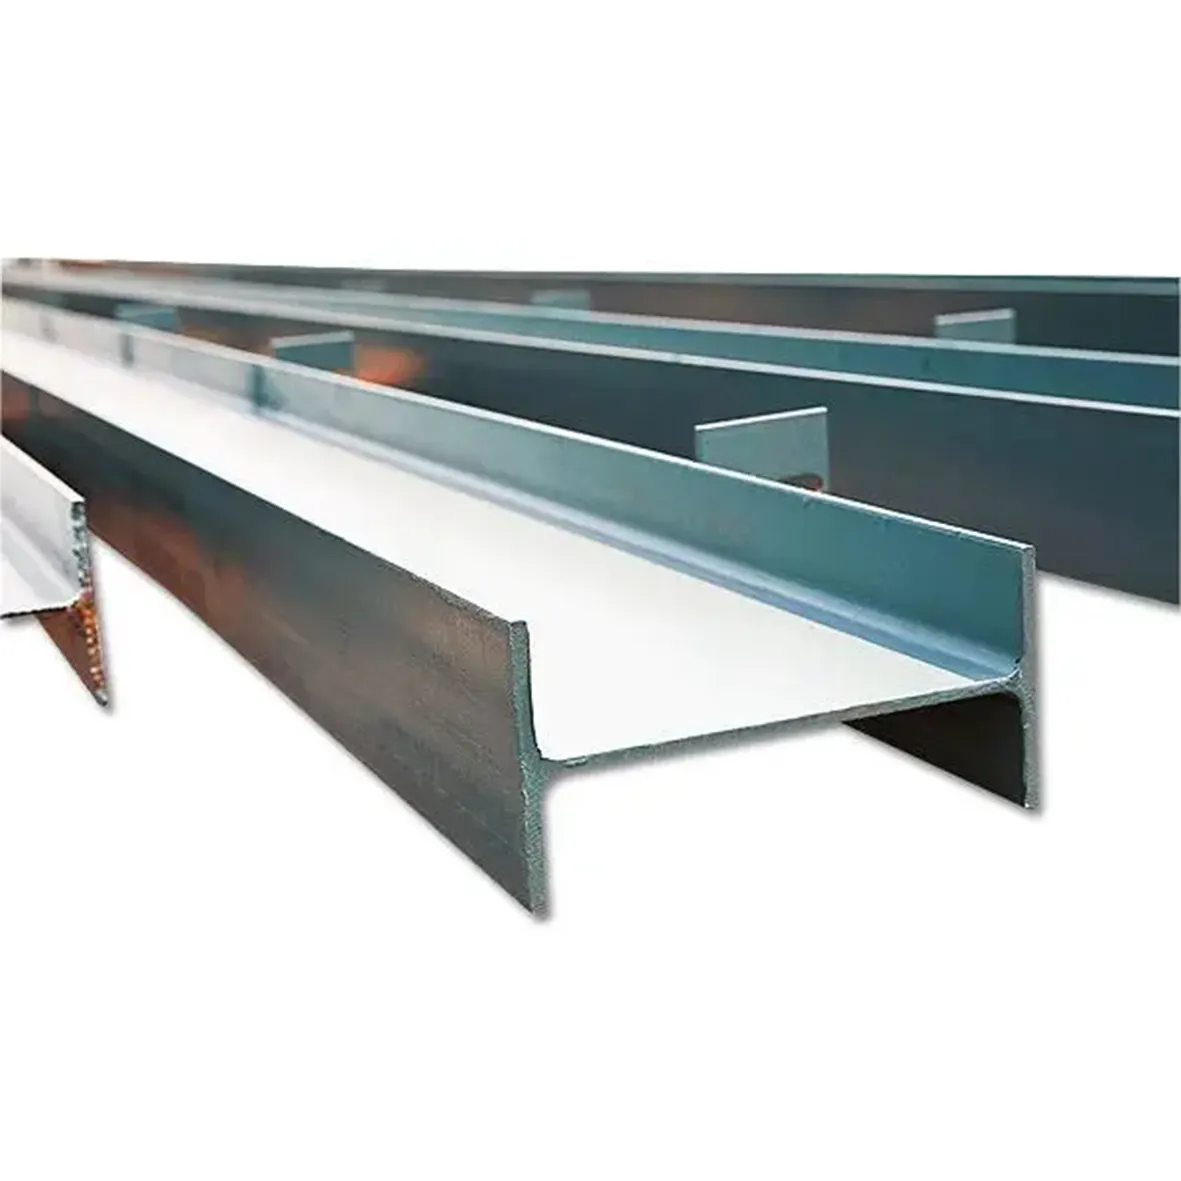 Vigas de acero estructural tamaño estándar galvanizado H-beam precio por tonelada H viga de hierro i acero